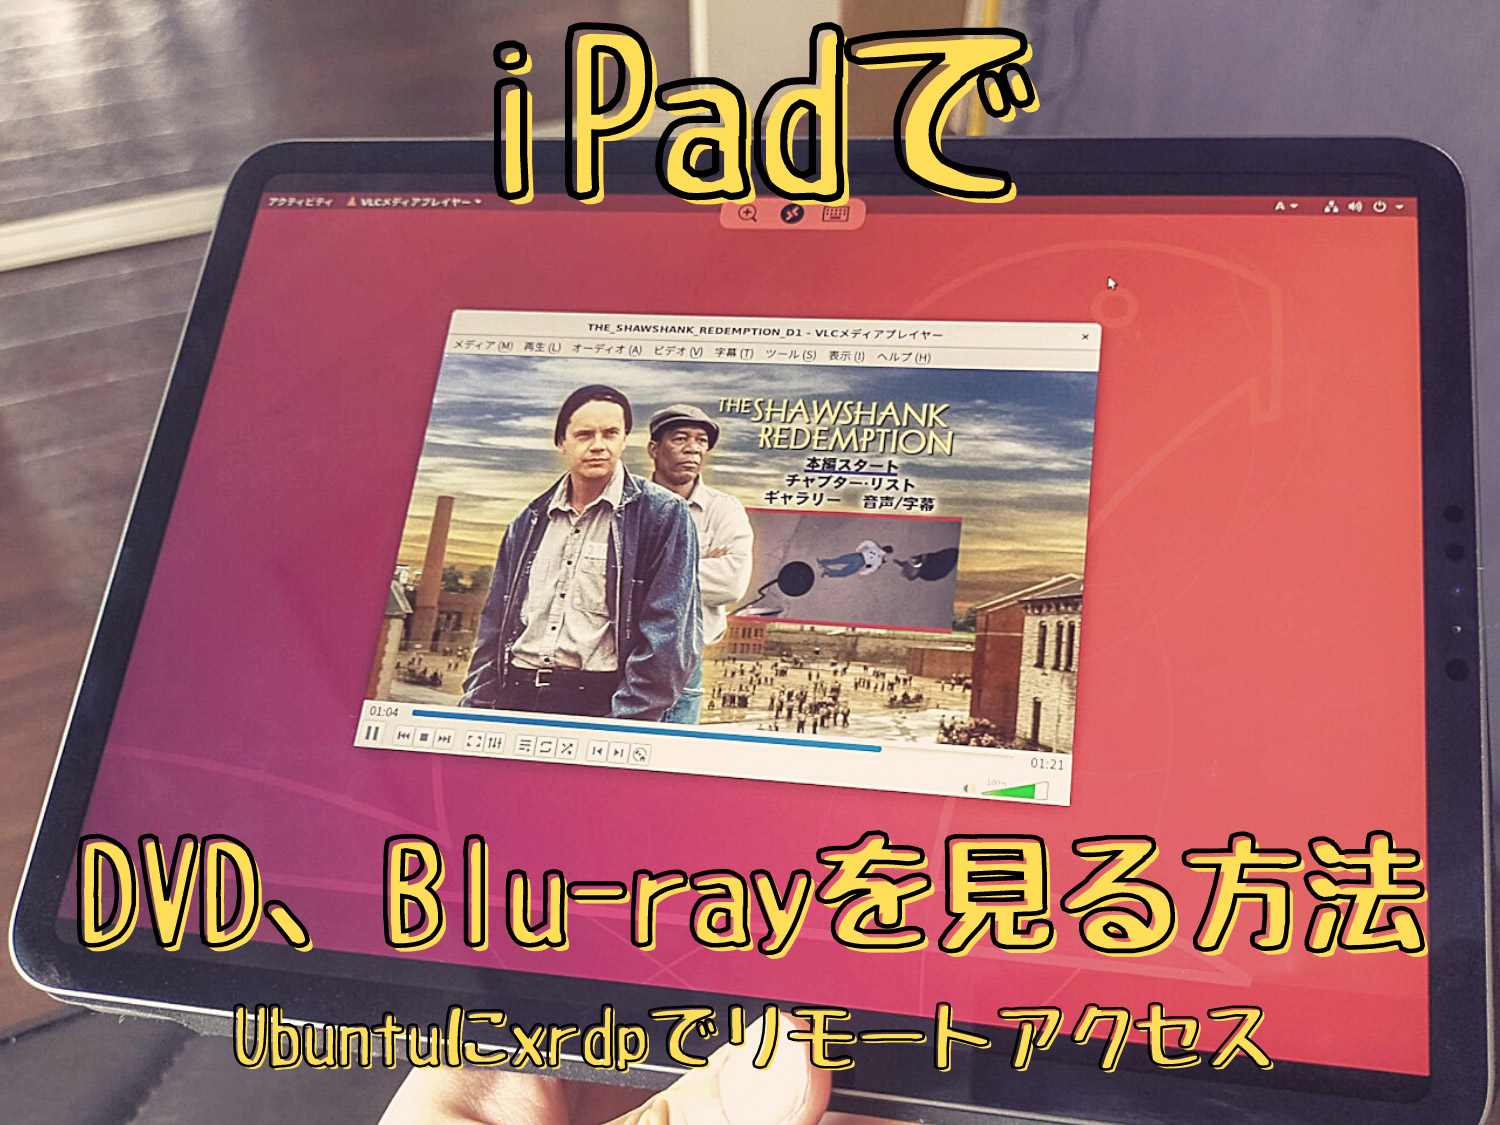 iPadでDVD&Blu-rayの映像を見たいのでUbuntuへxrdp使ってリモートデスクトップして尚且つ音声もリダイレクトしてみる